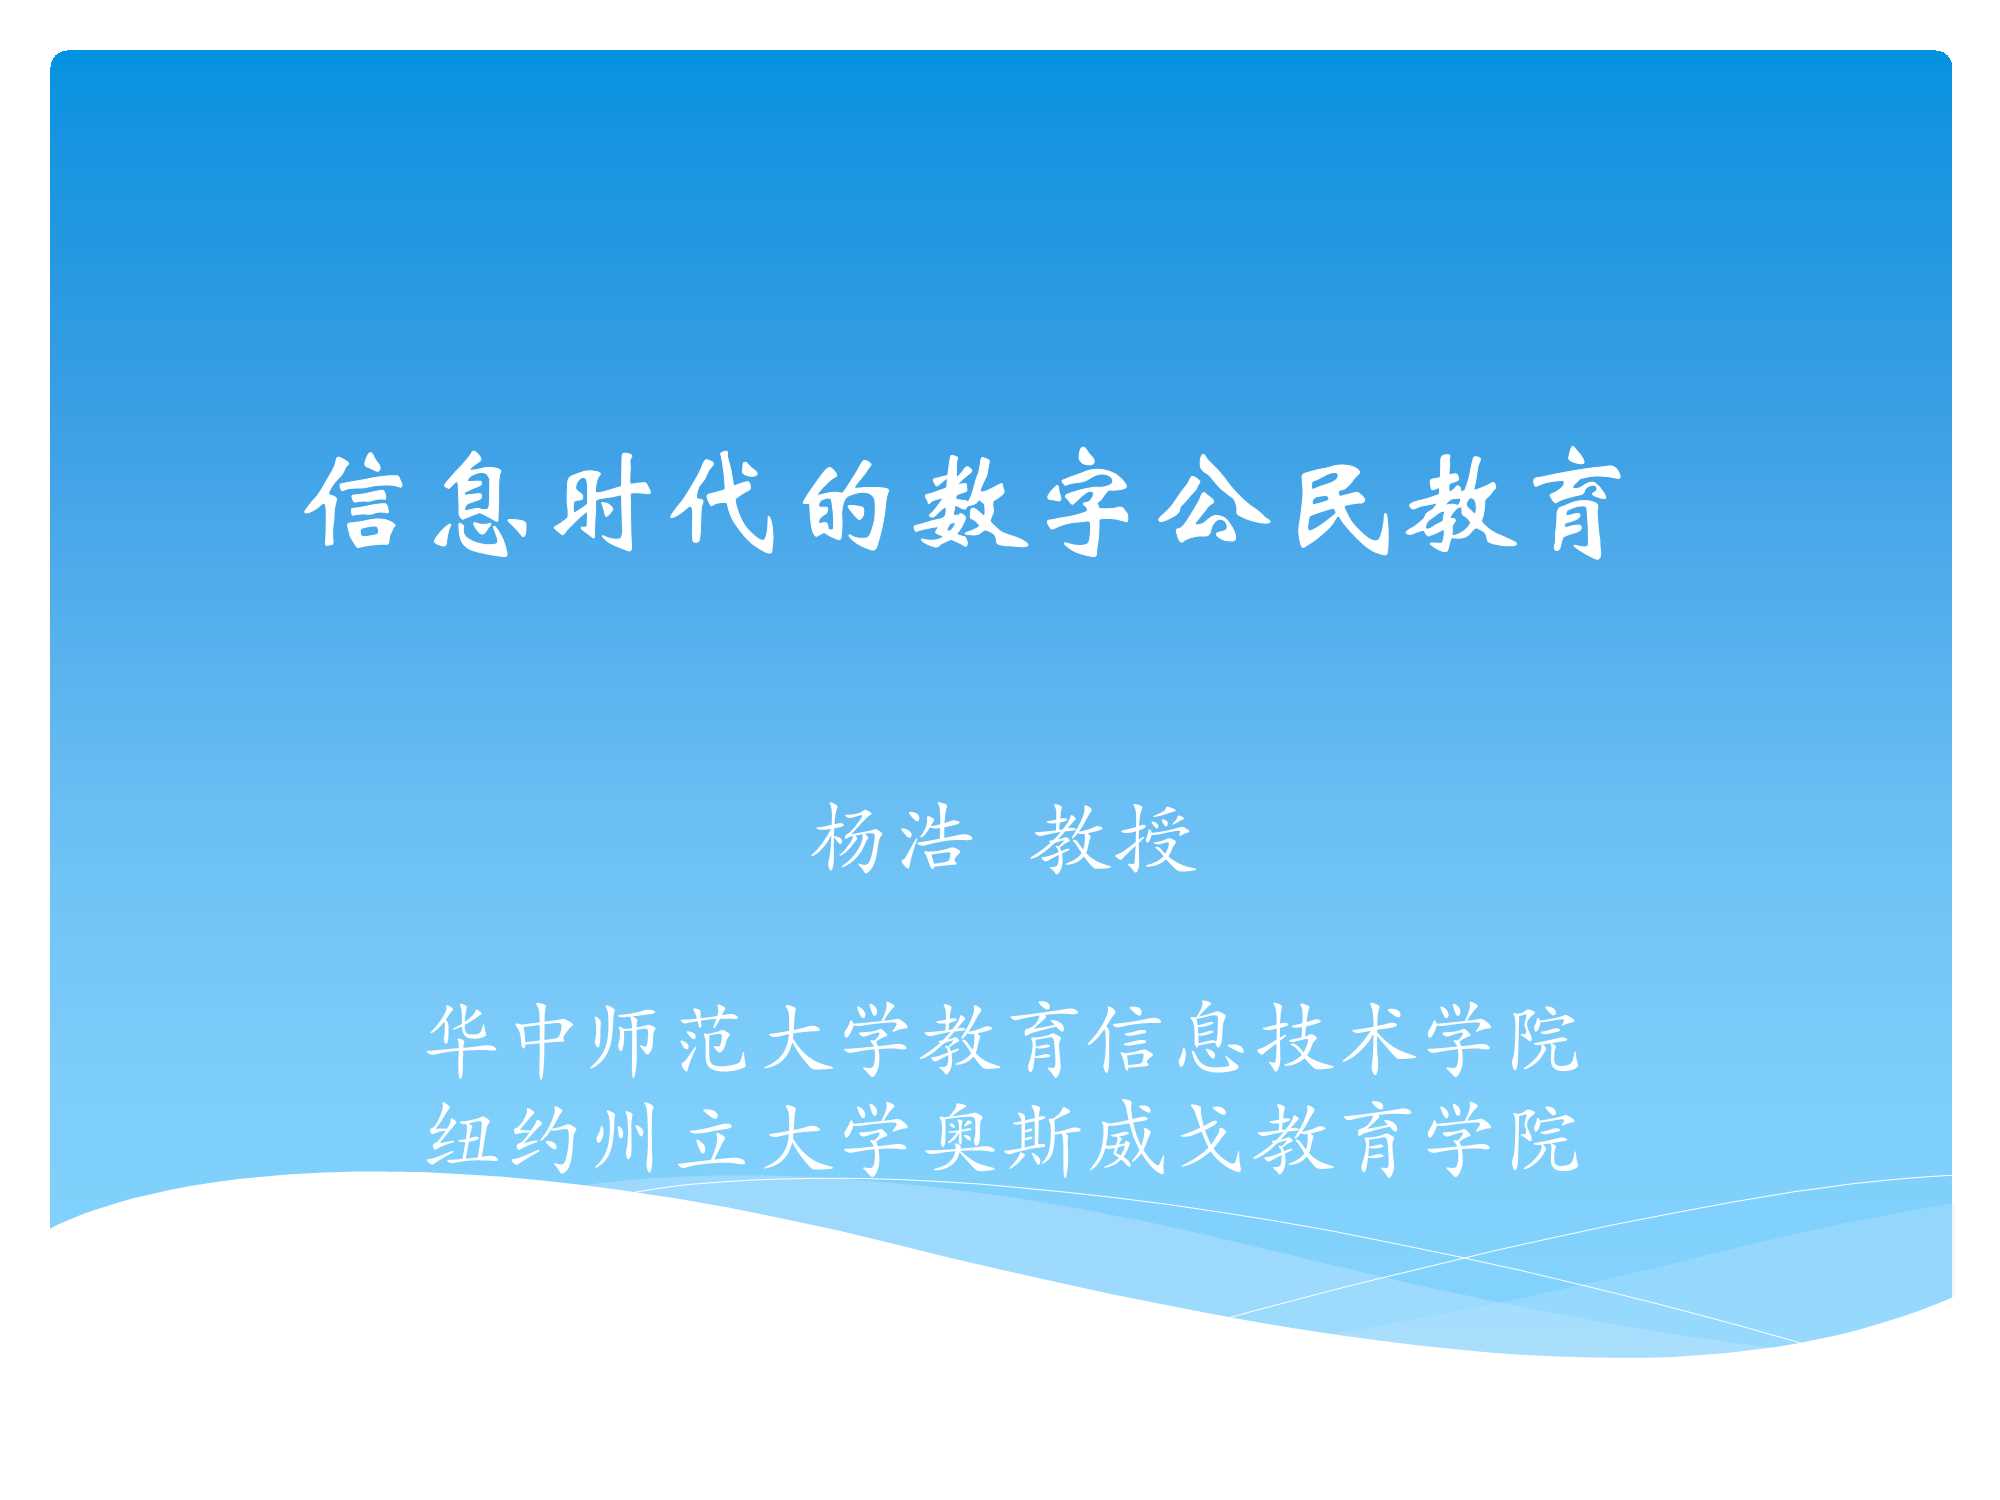 杨浩-信息时代的数字公民教育-2015.10-33页